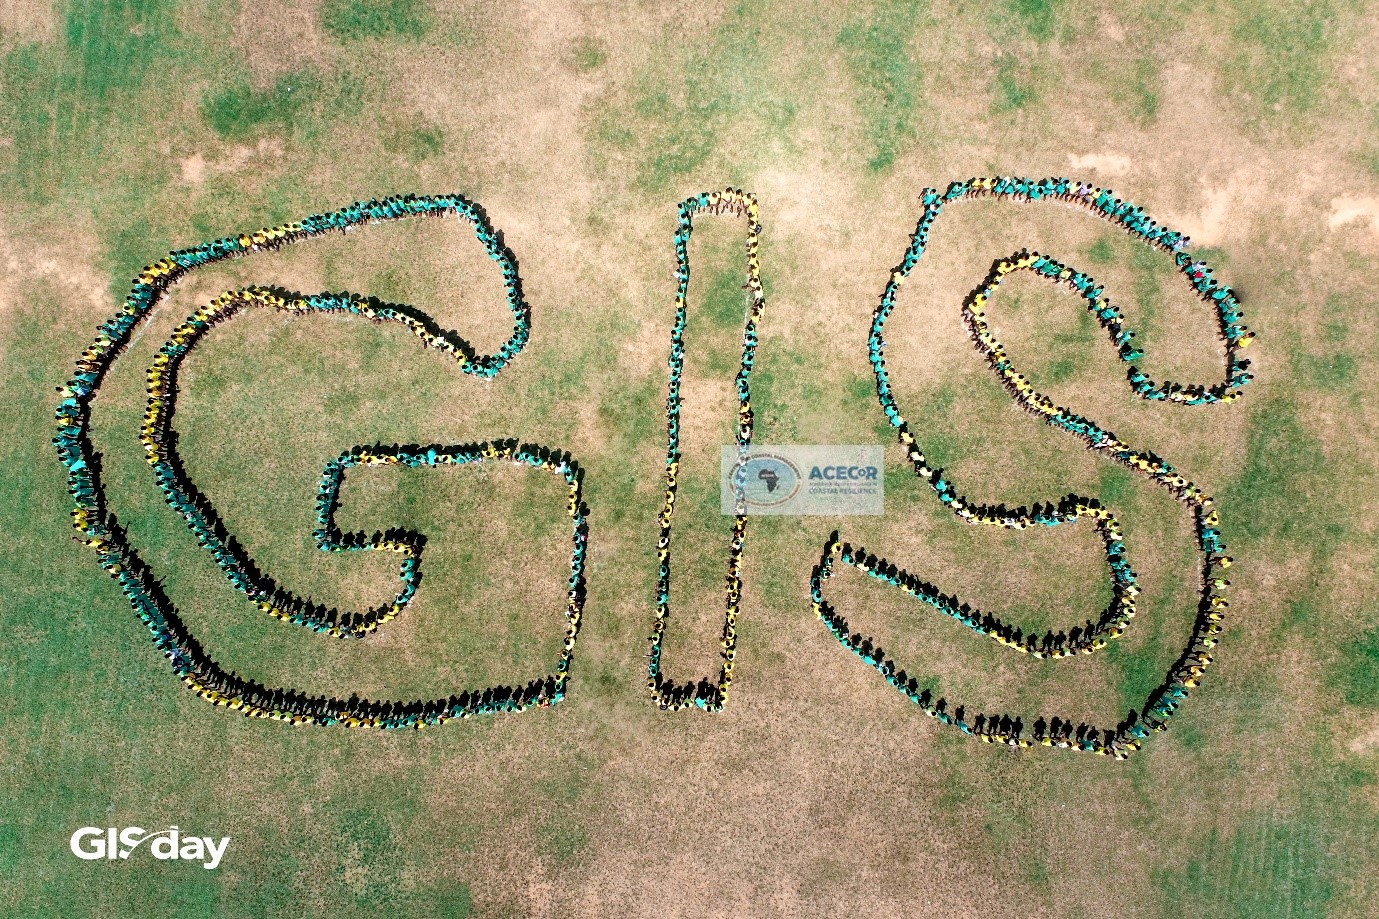 GIS Day at Edinaman SHS